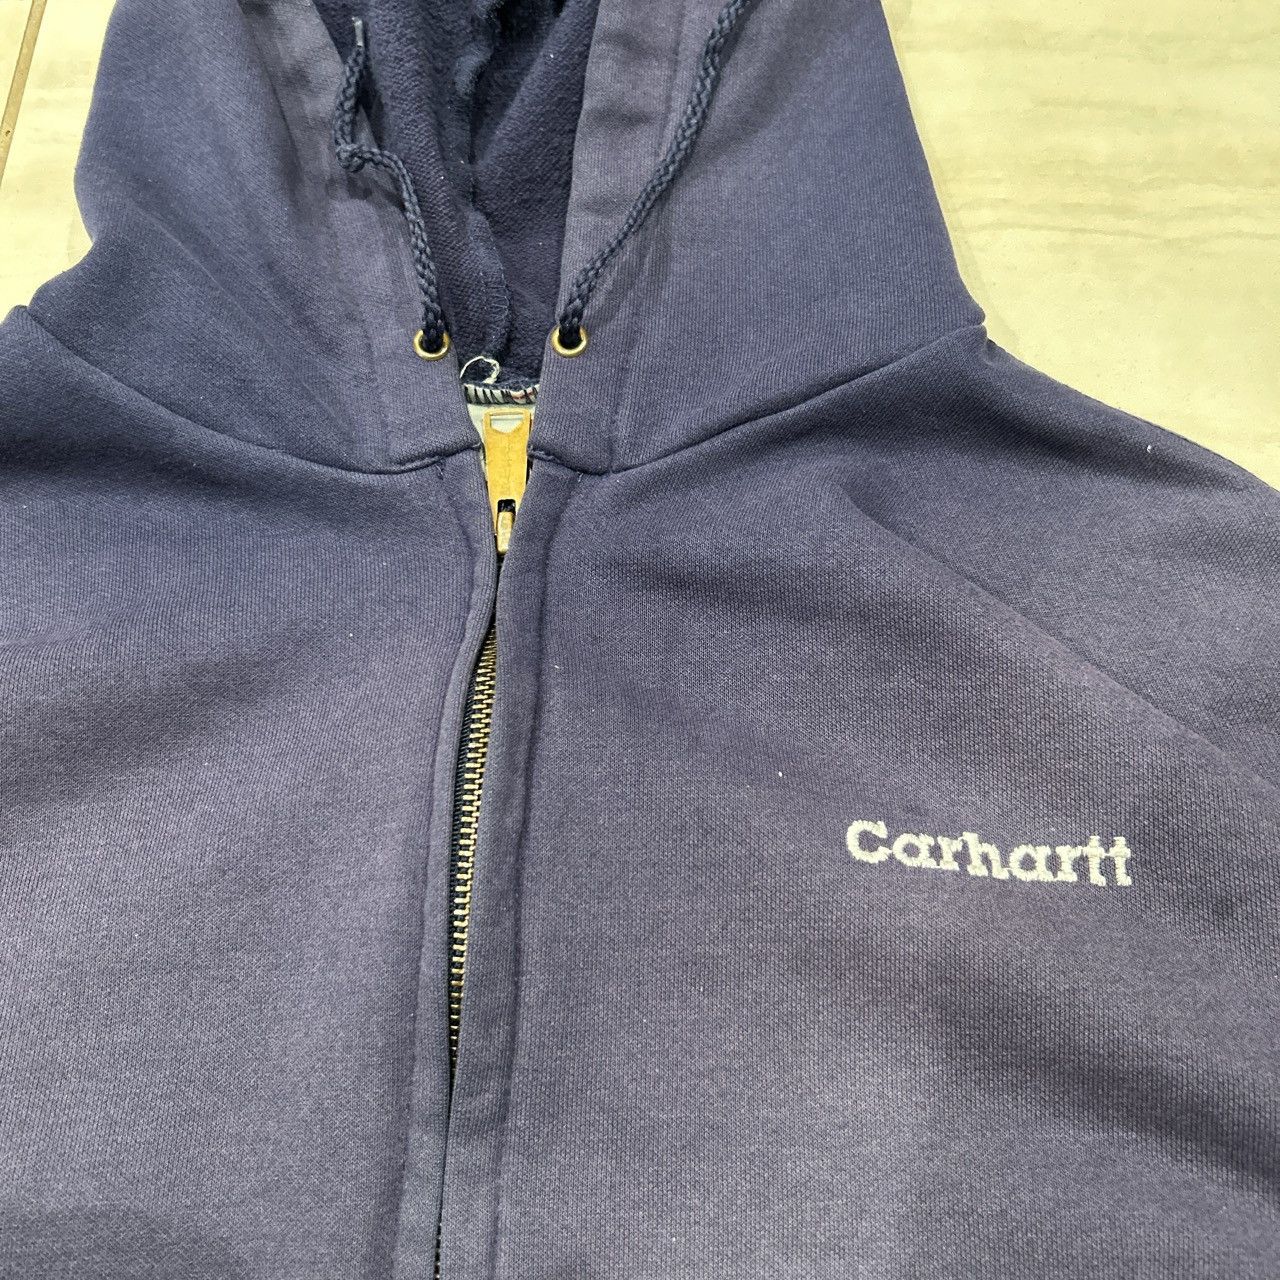 Carhartt Carhartt zip up Size US L / EU 52-54 / 3 - 2 Preview